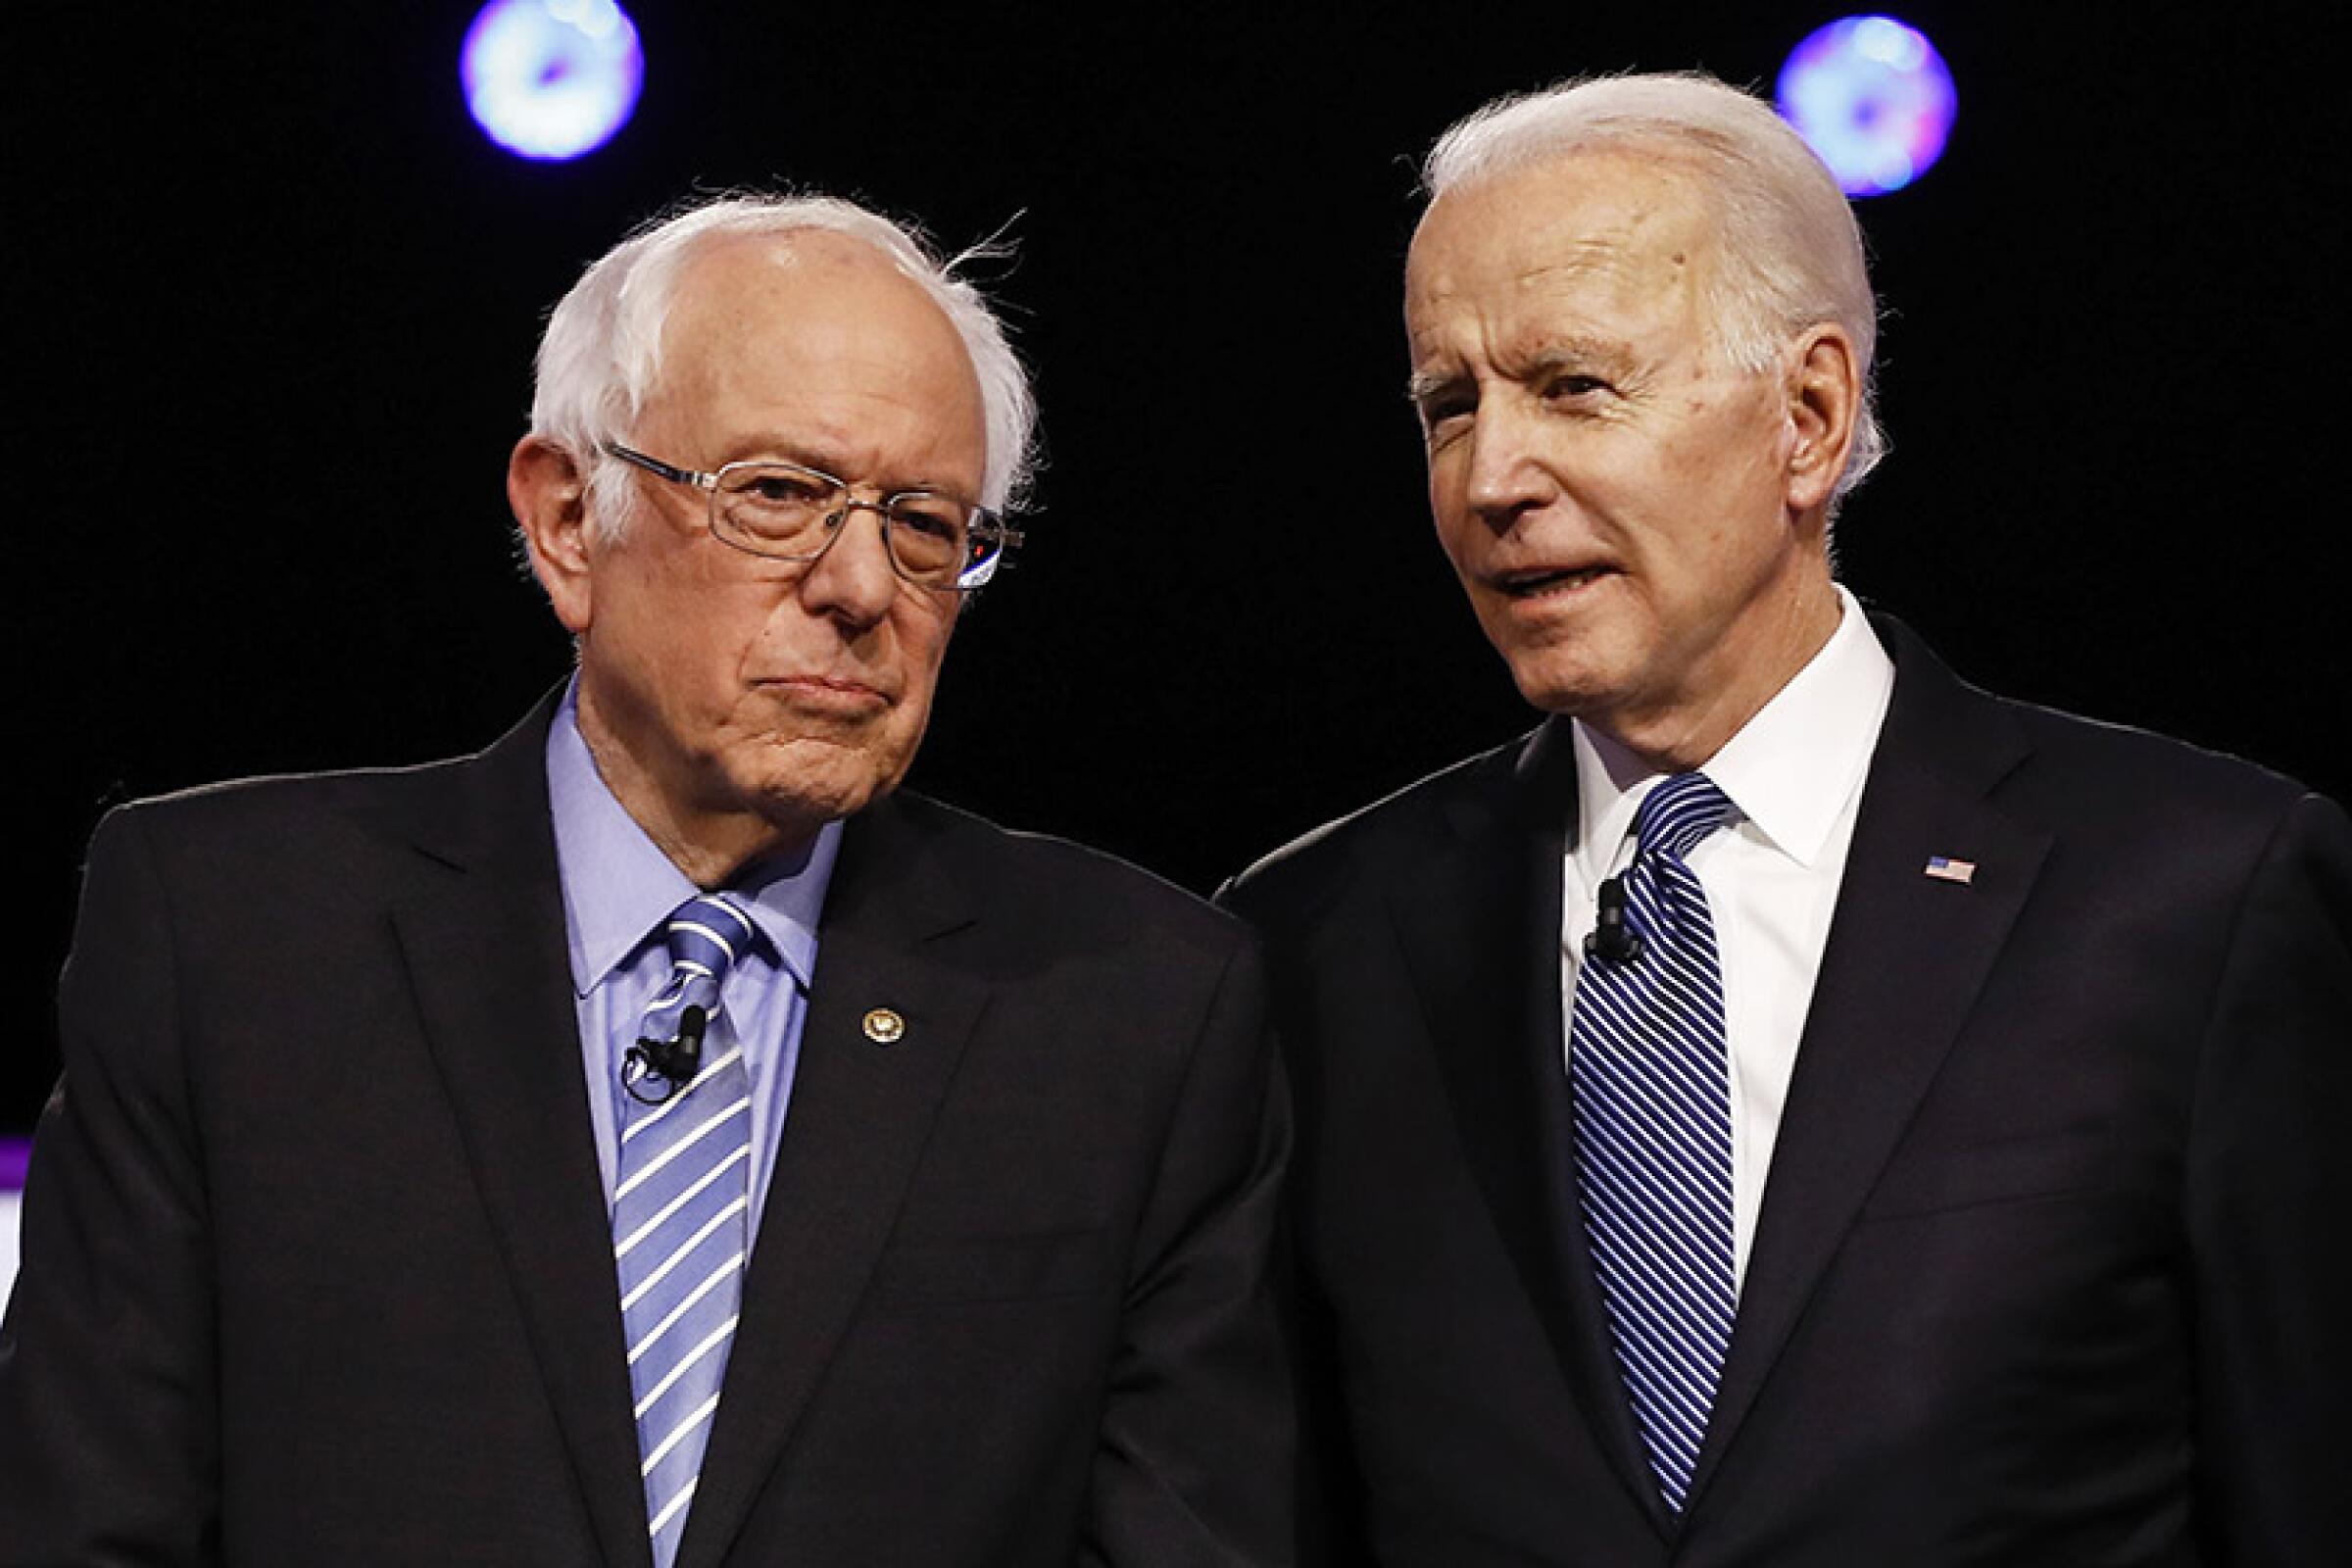 Bernie Sanders, left, and Joe Biden